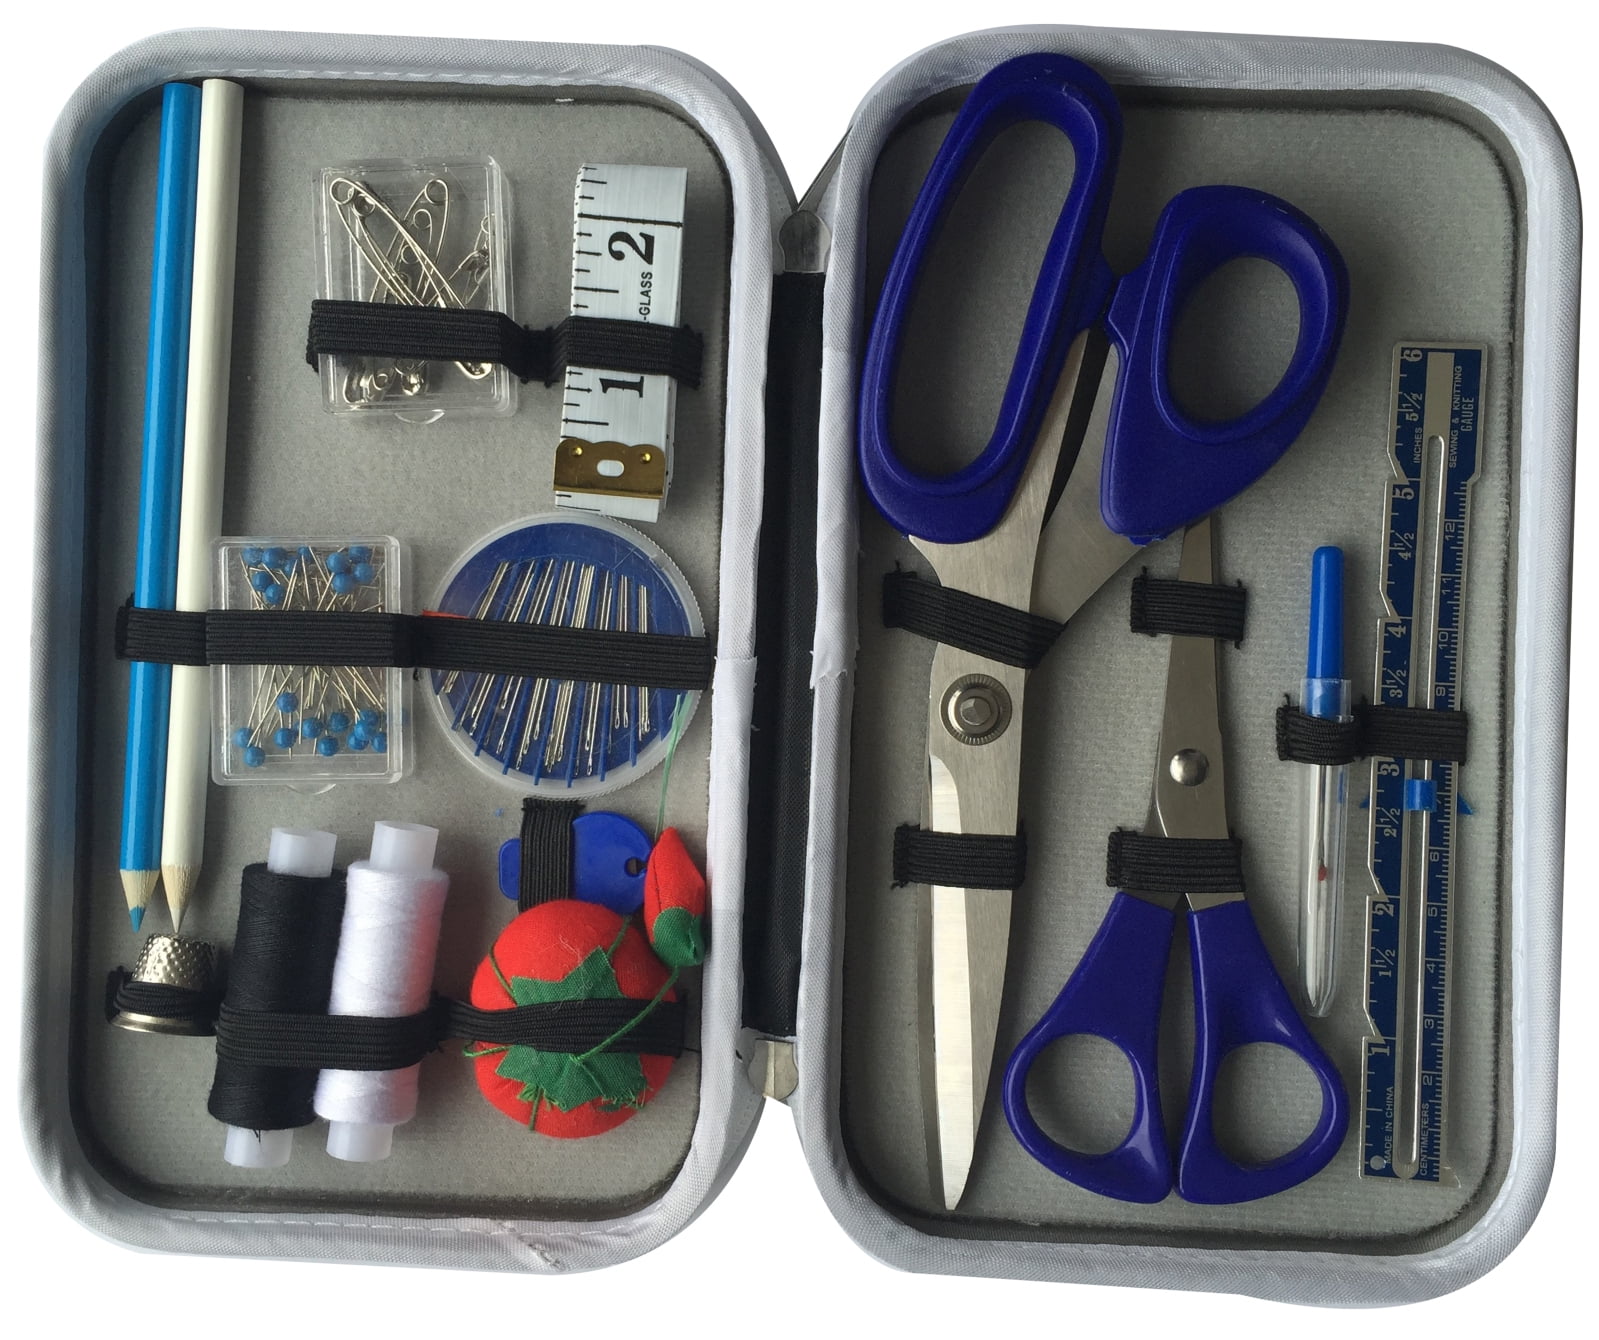 Travel Sewing Kit (27 pc.)